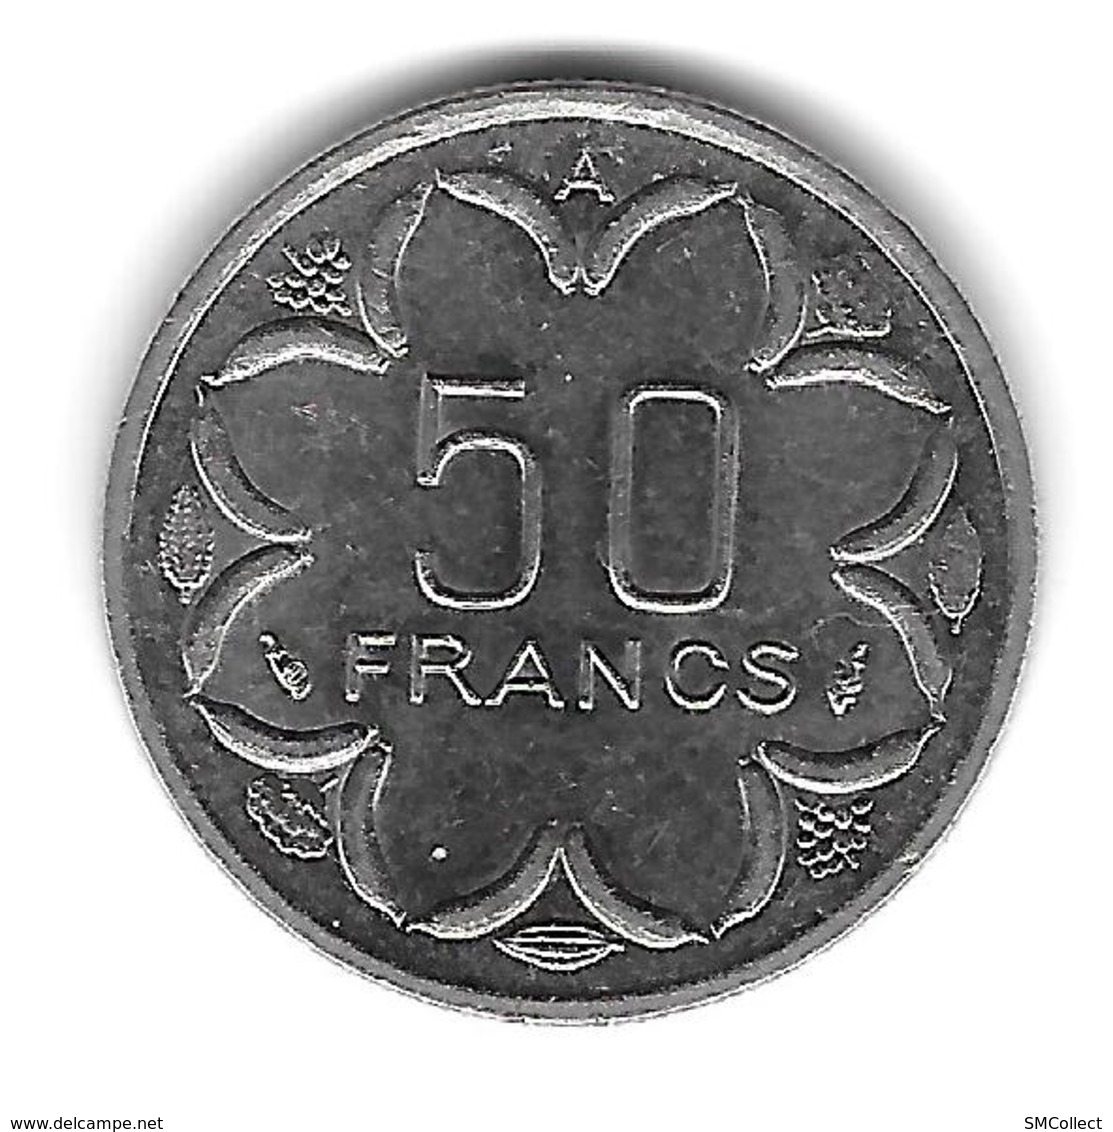 Etats De L'Afrique Centrale. 50 Francs 1991 Lettre A (Tchad) - (1296) - Chad